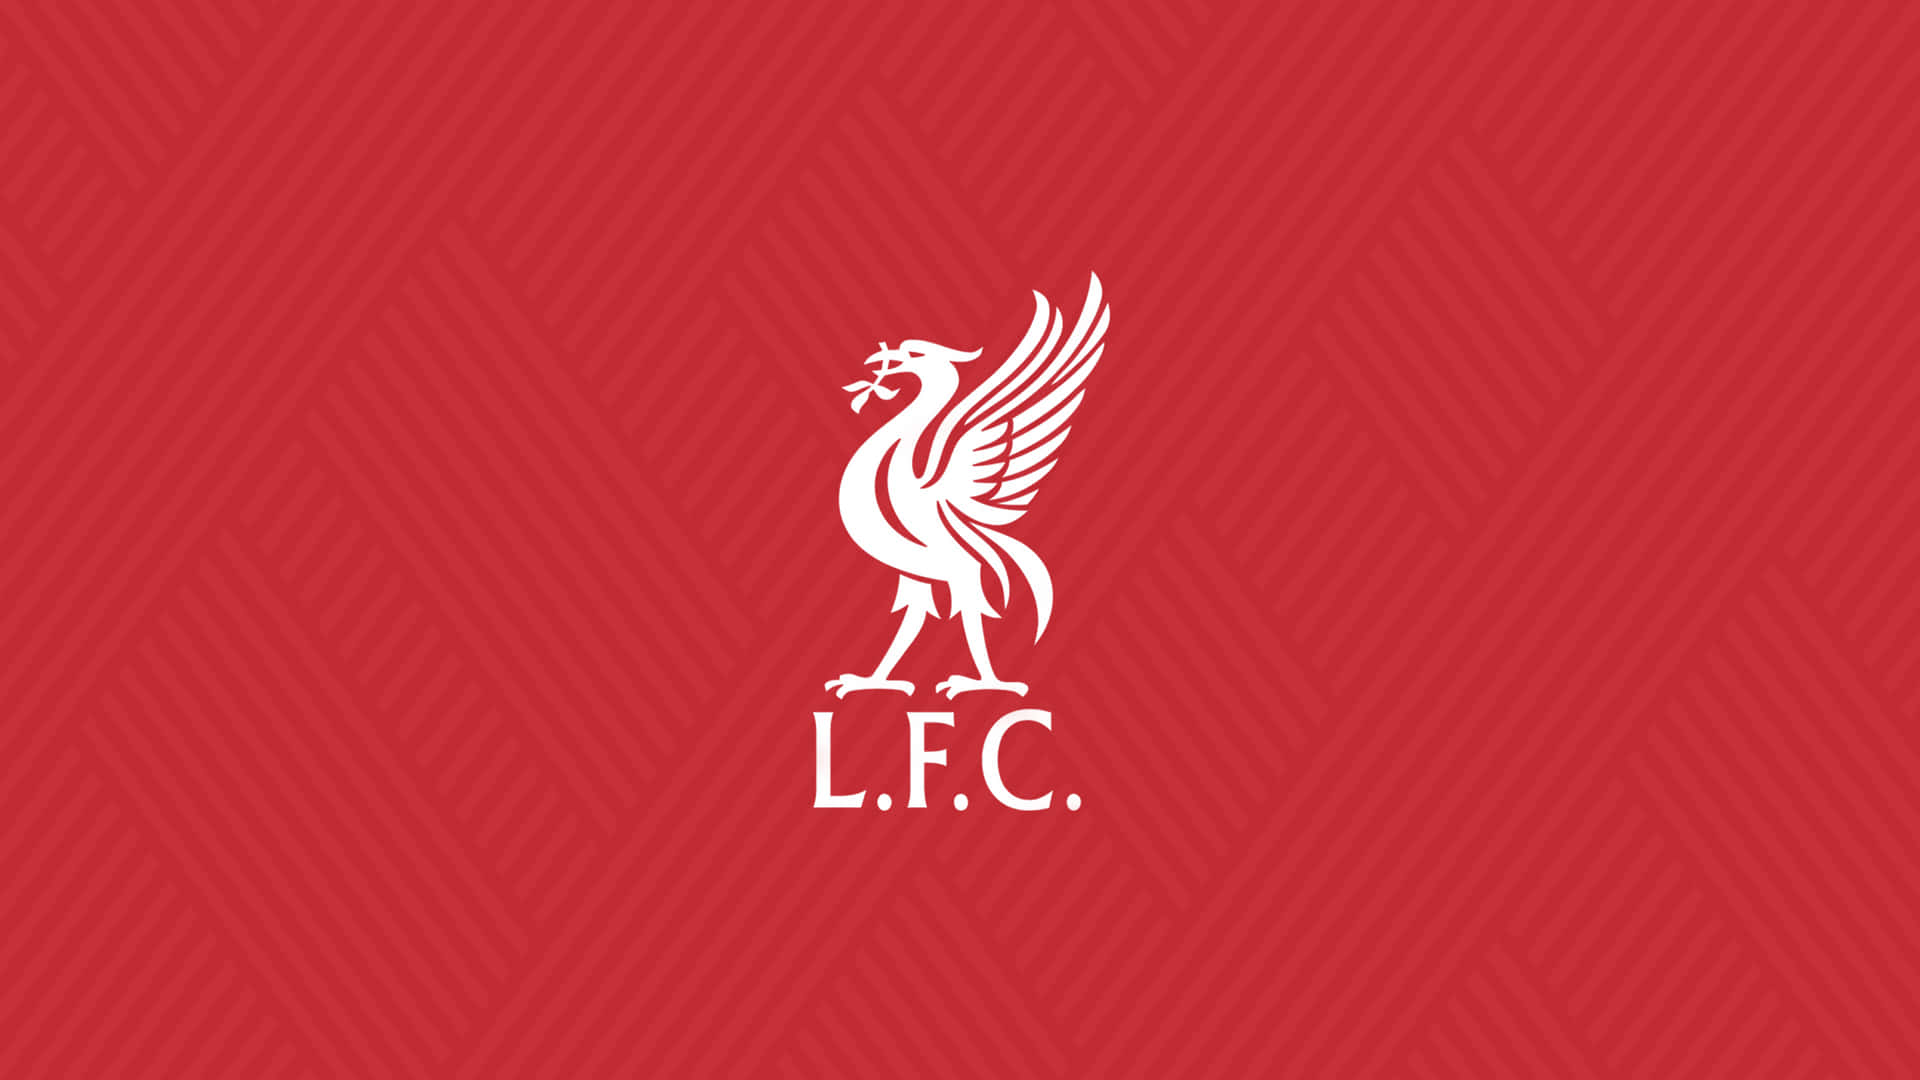 Liverpool F.C. Desktop Background Wallpaper